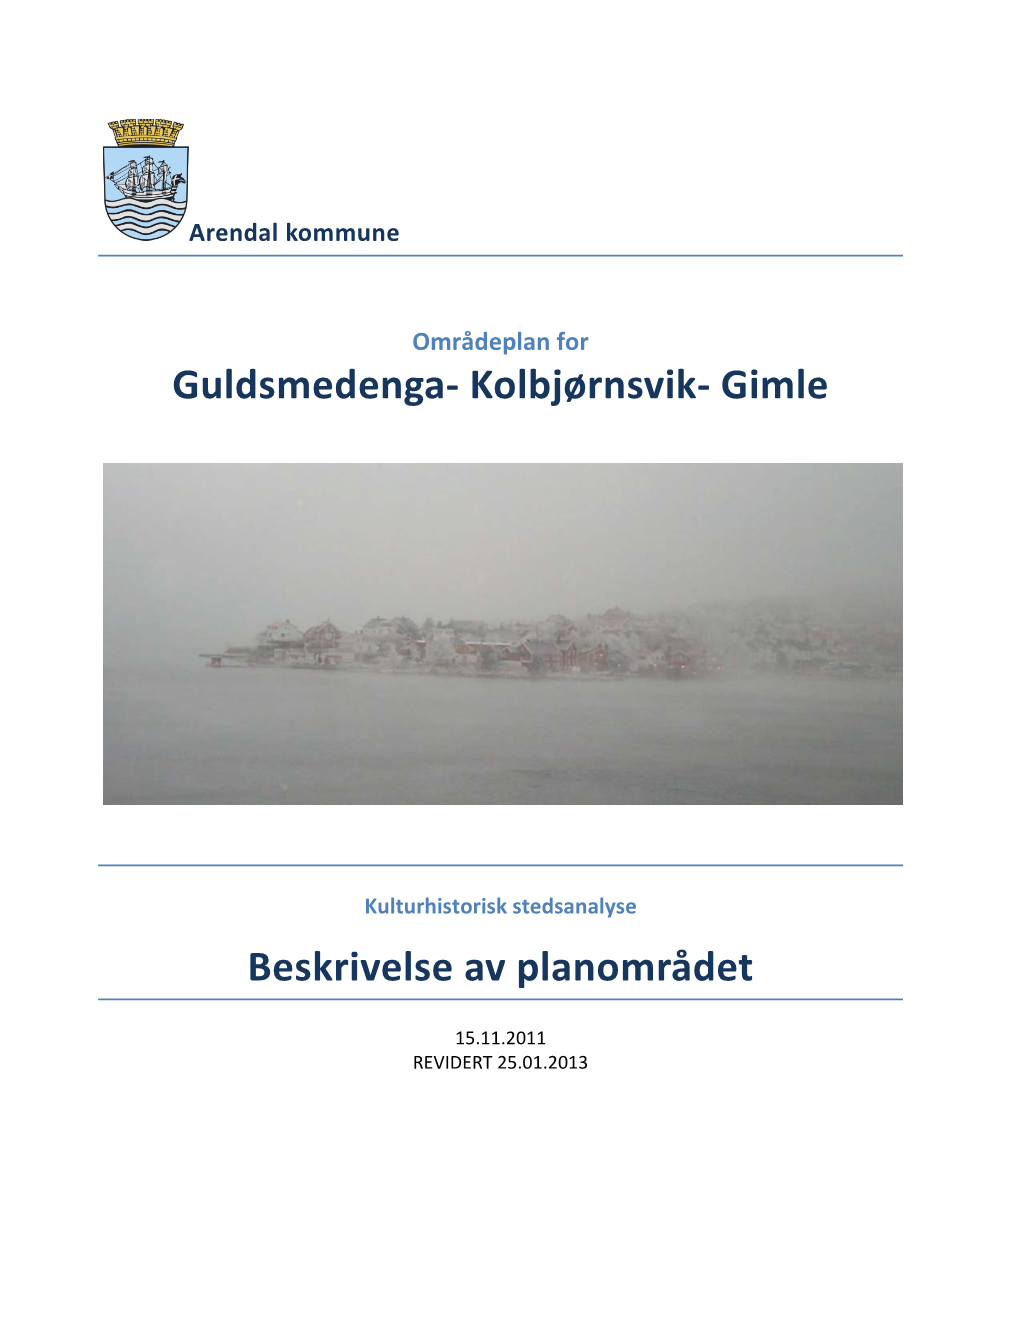 Guldsmedenga- Kolbjørnsvik- Gimle Beskrivelse Av Planområdet